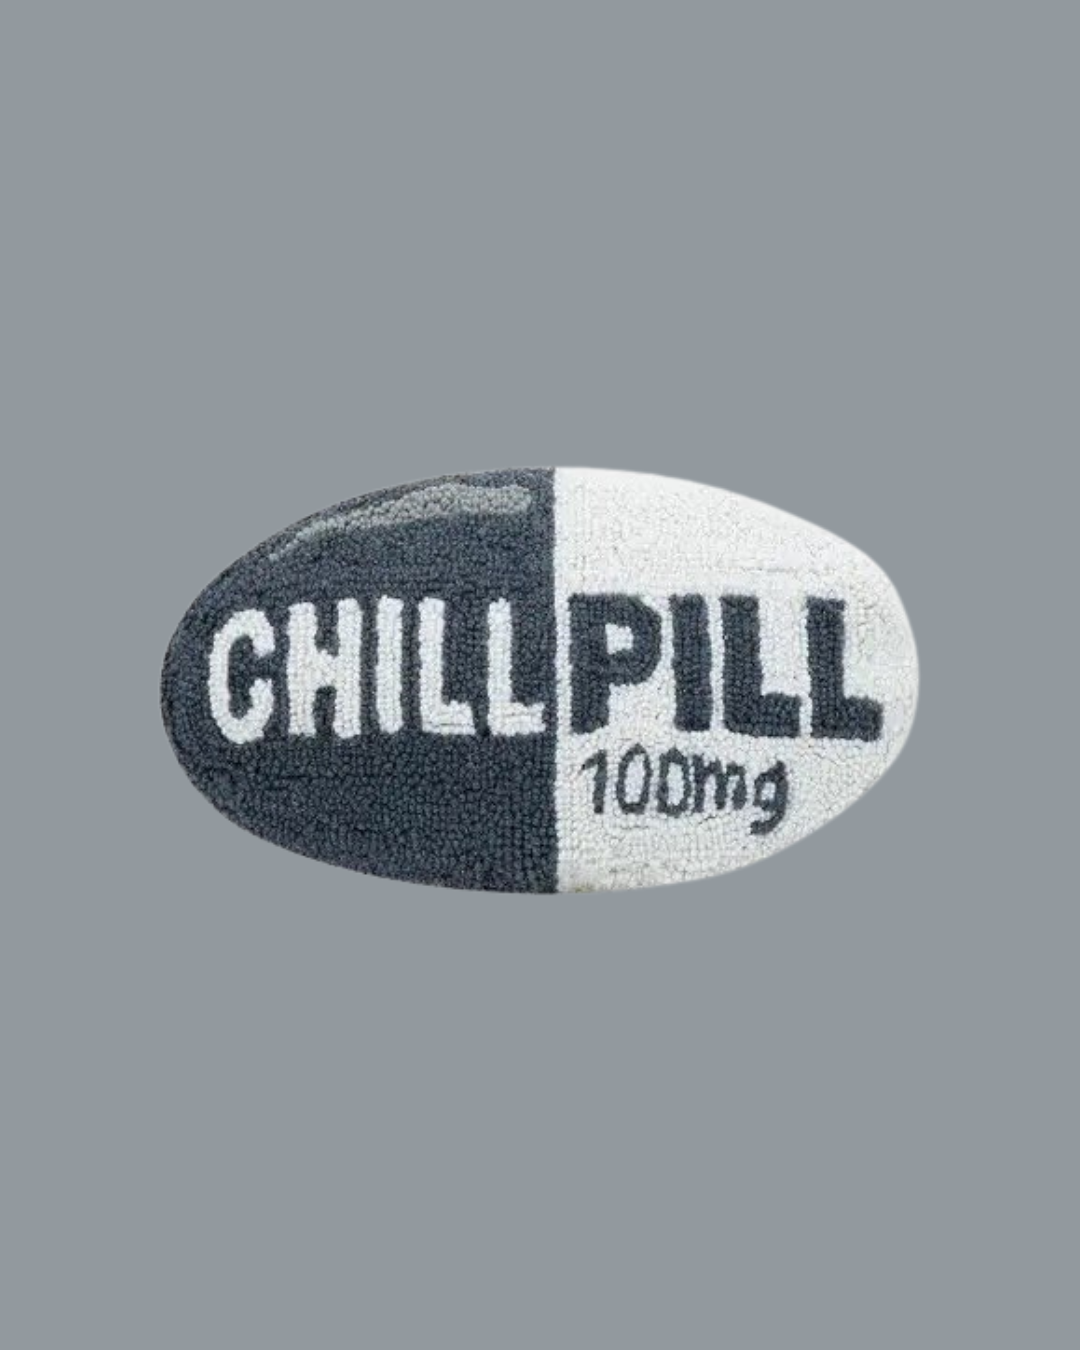 Peking Handicraft - Grey Chill Pill Hook Pillow